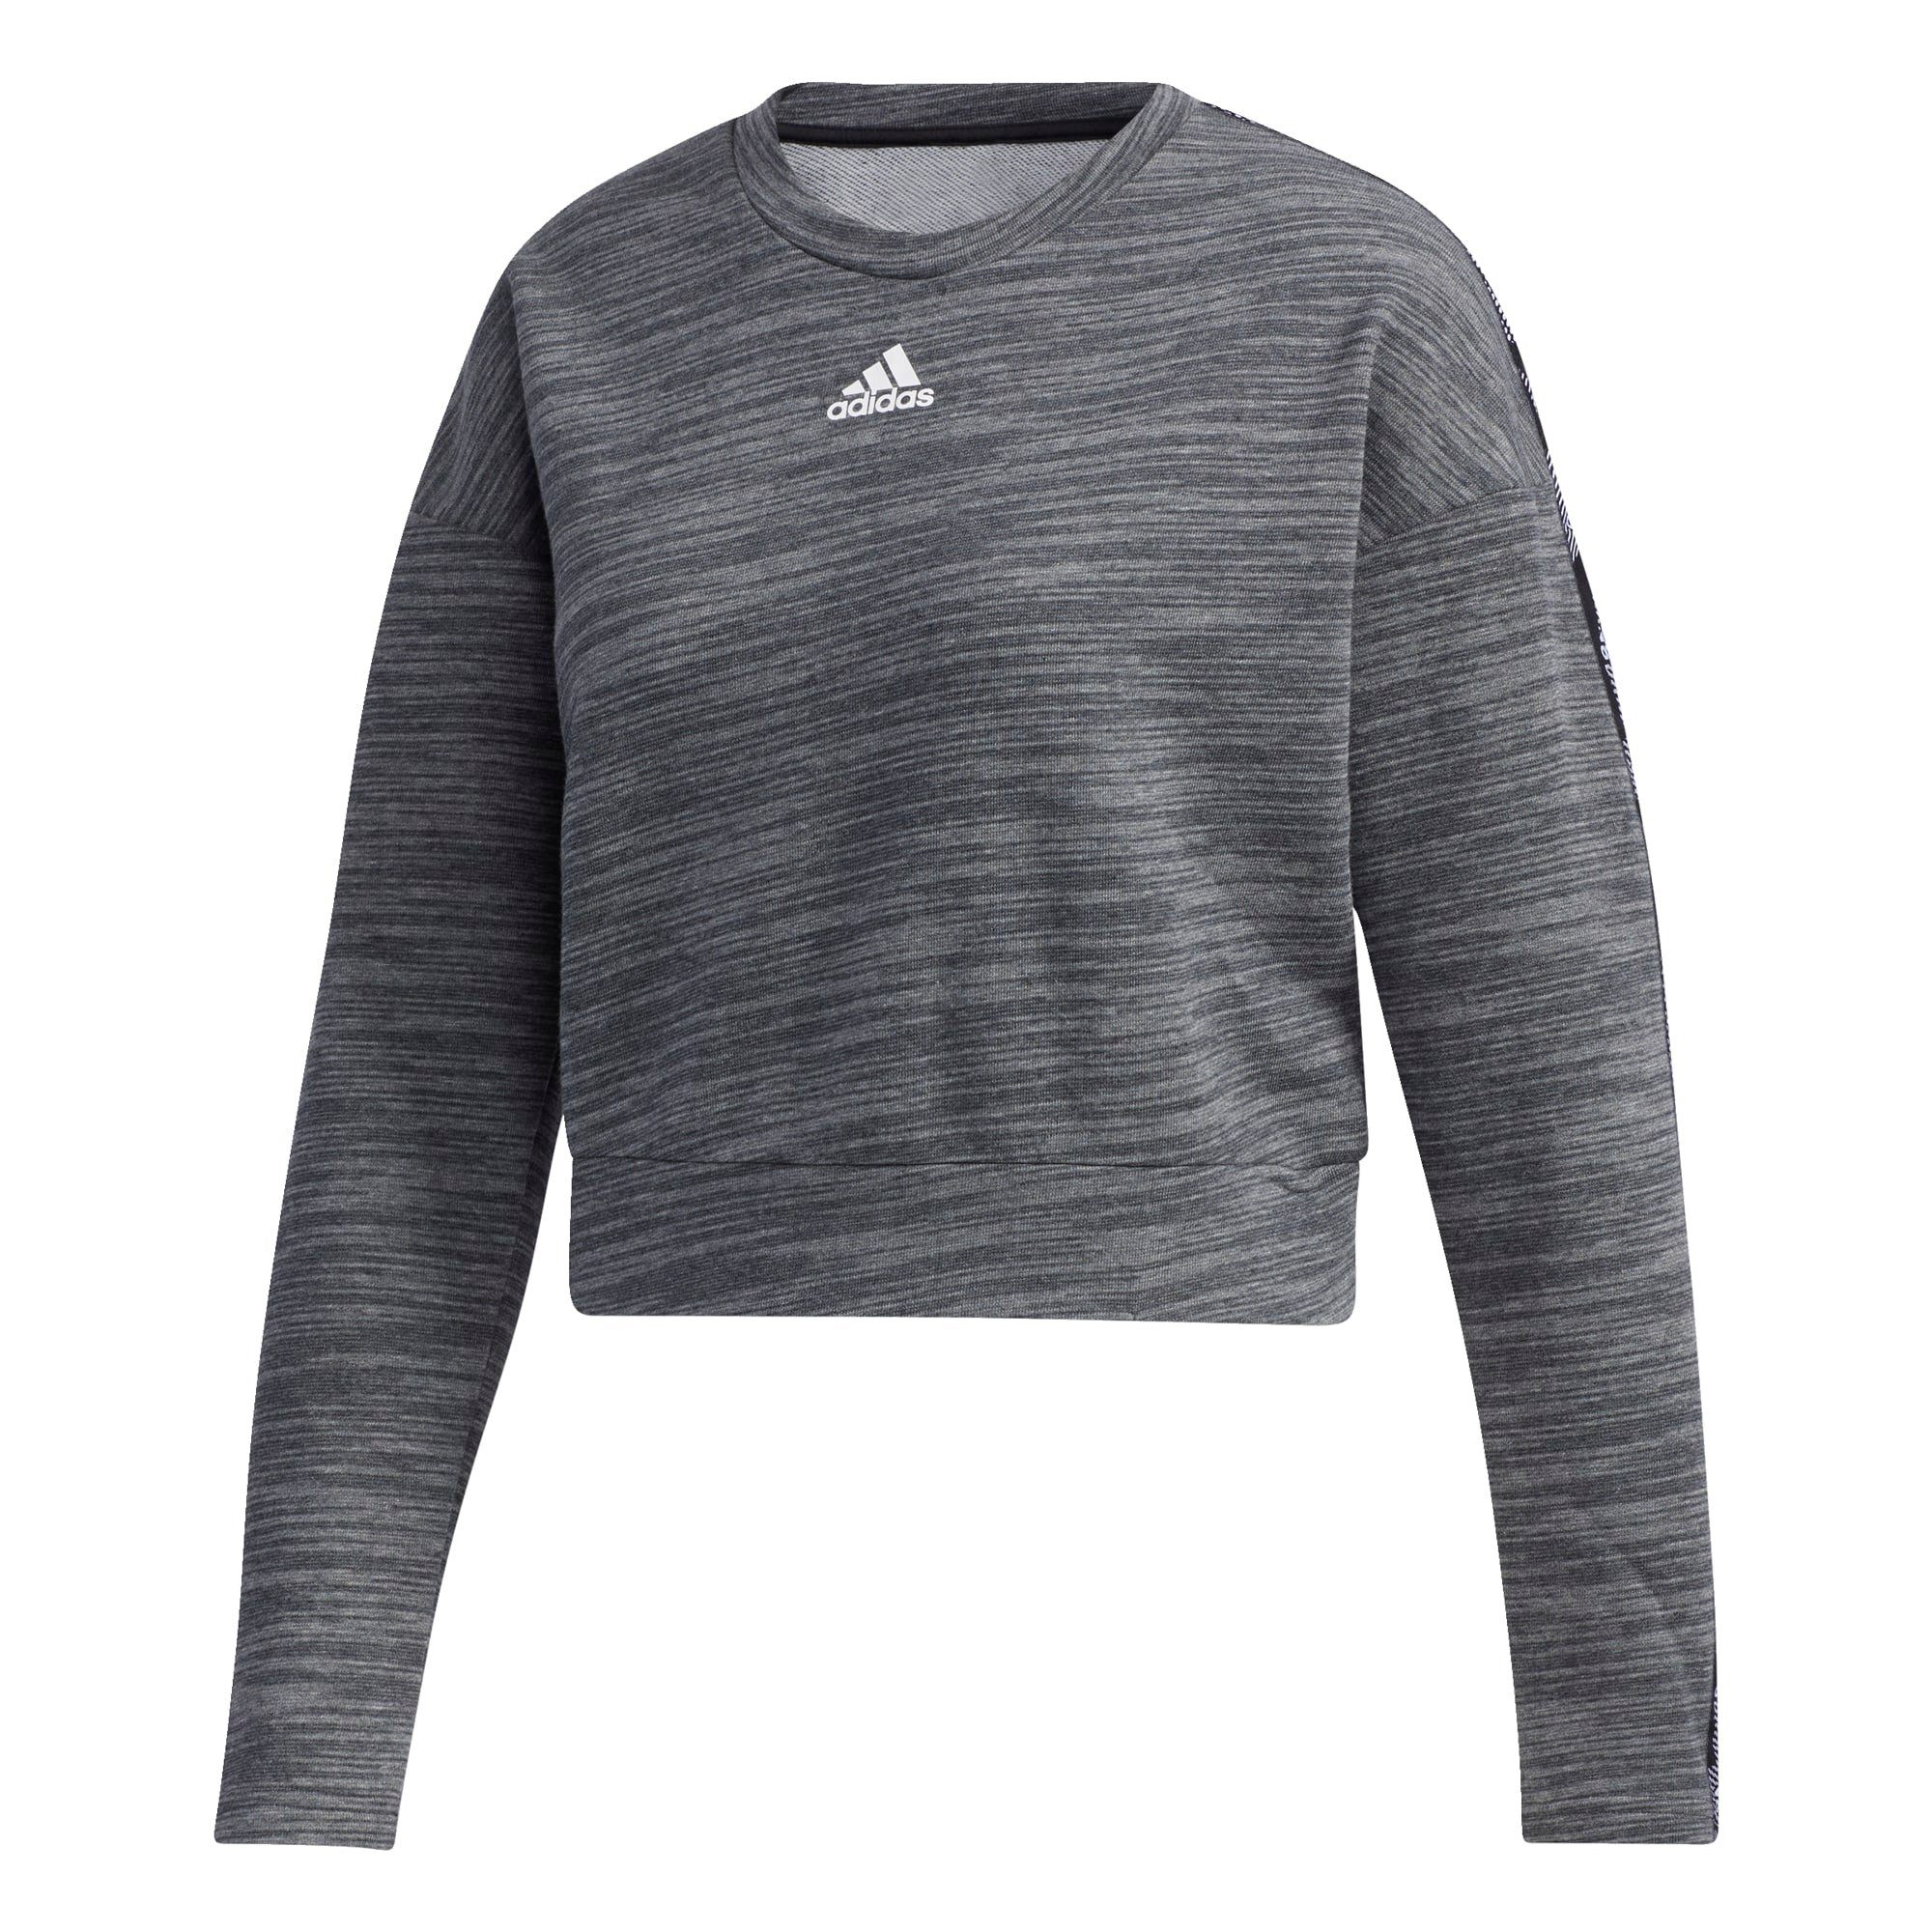 Adidas Damen Essential Tape Sweatshirt Pullover Dunkelgrau Pullover Sweats Kleidung Damen Mam Sport Von Sportler Zu Sportler